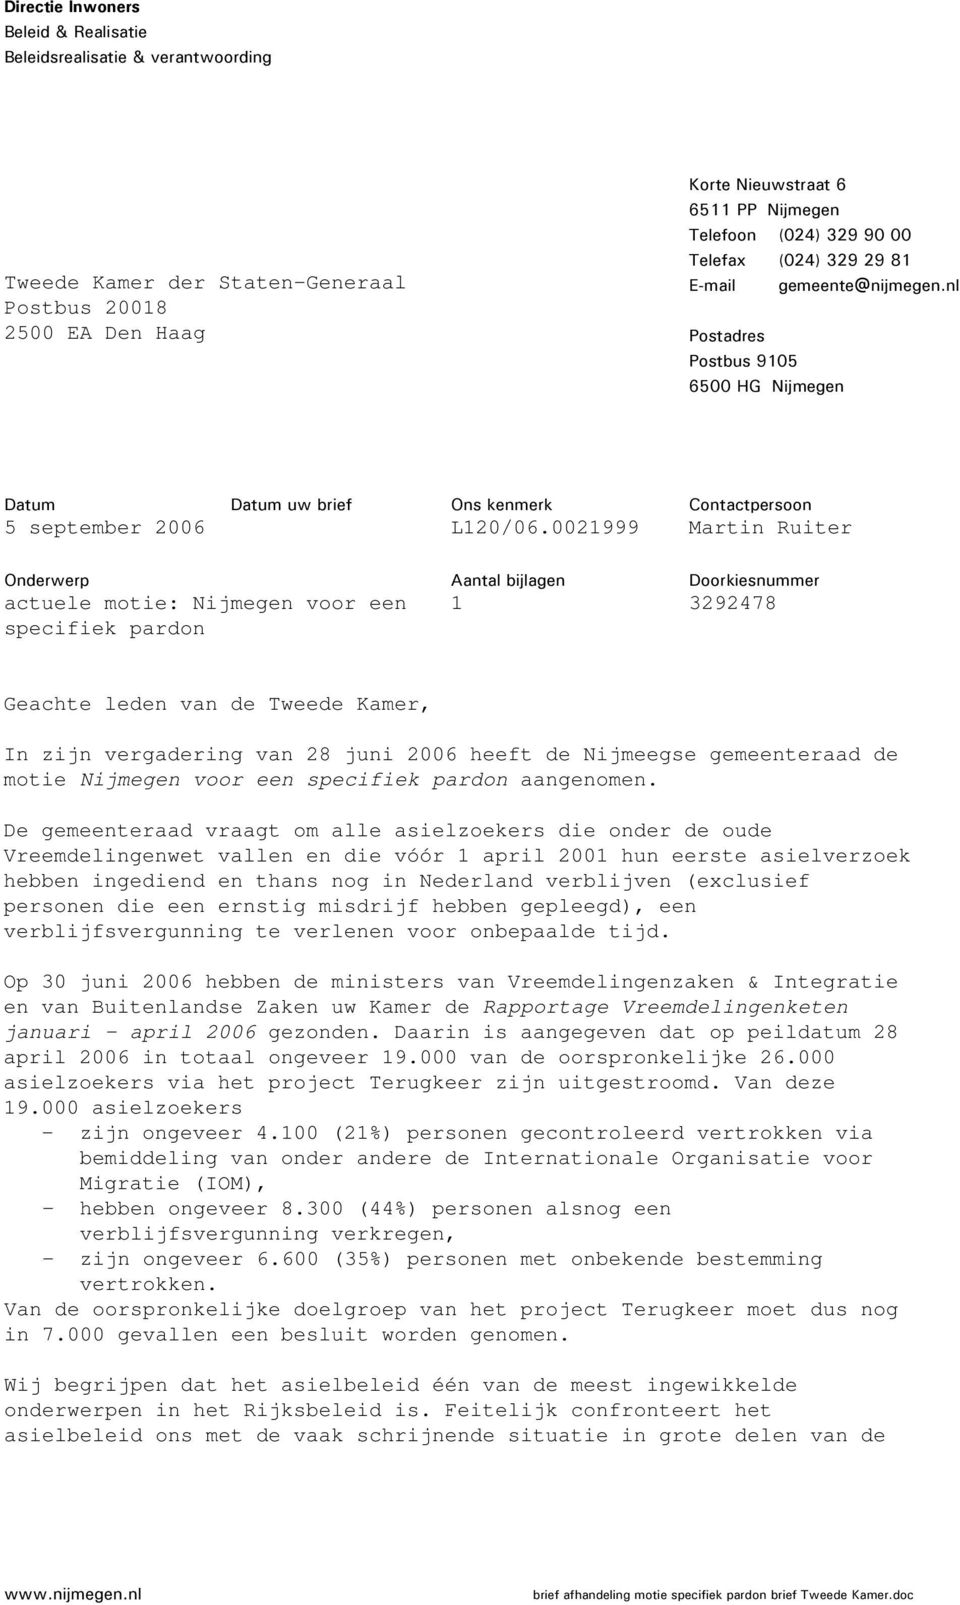 002999 Contactpersoon Martin Ruiter Onderwerp actuele motie: Nijmegen voor een specifiek pardon Aantal bijlagen Doorkiesnummer 3292478 Geachte leden van de Tweede Kamer, In zijn vergadering van 28